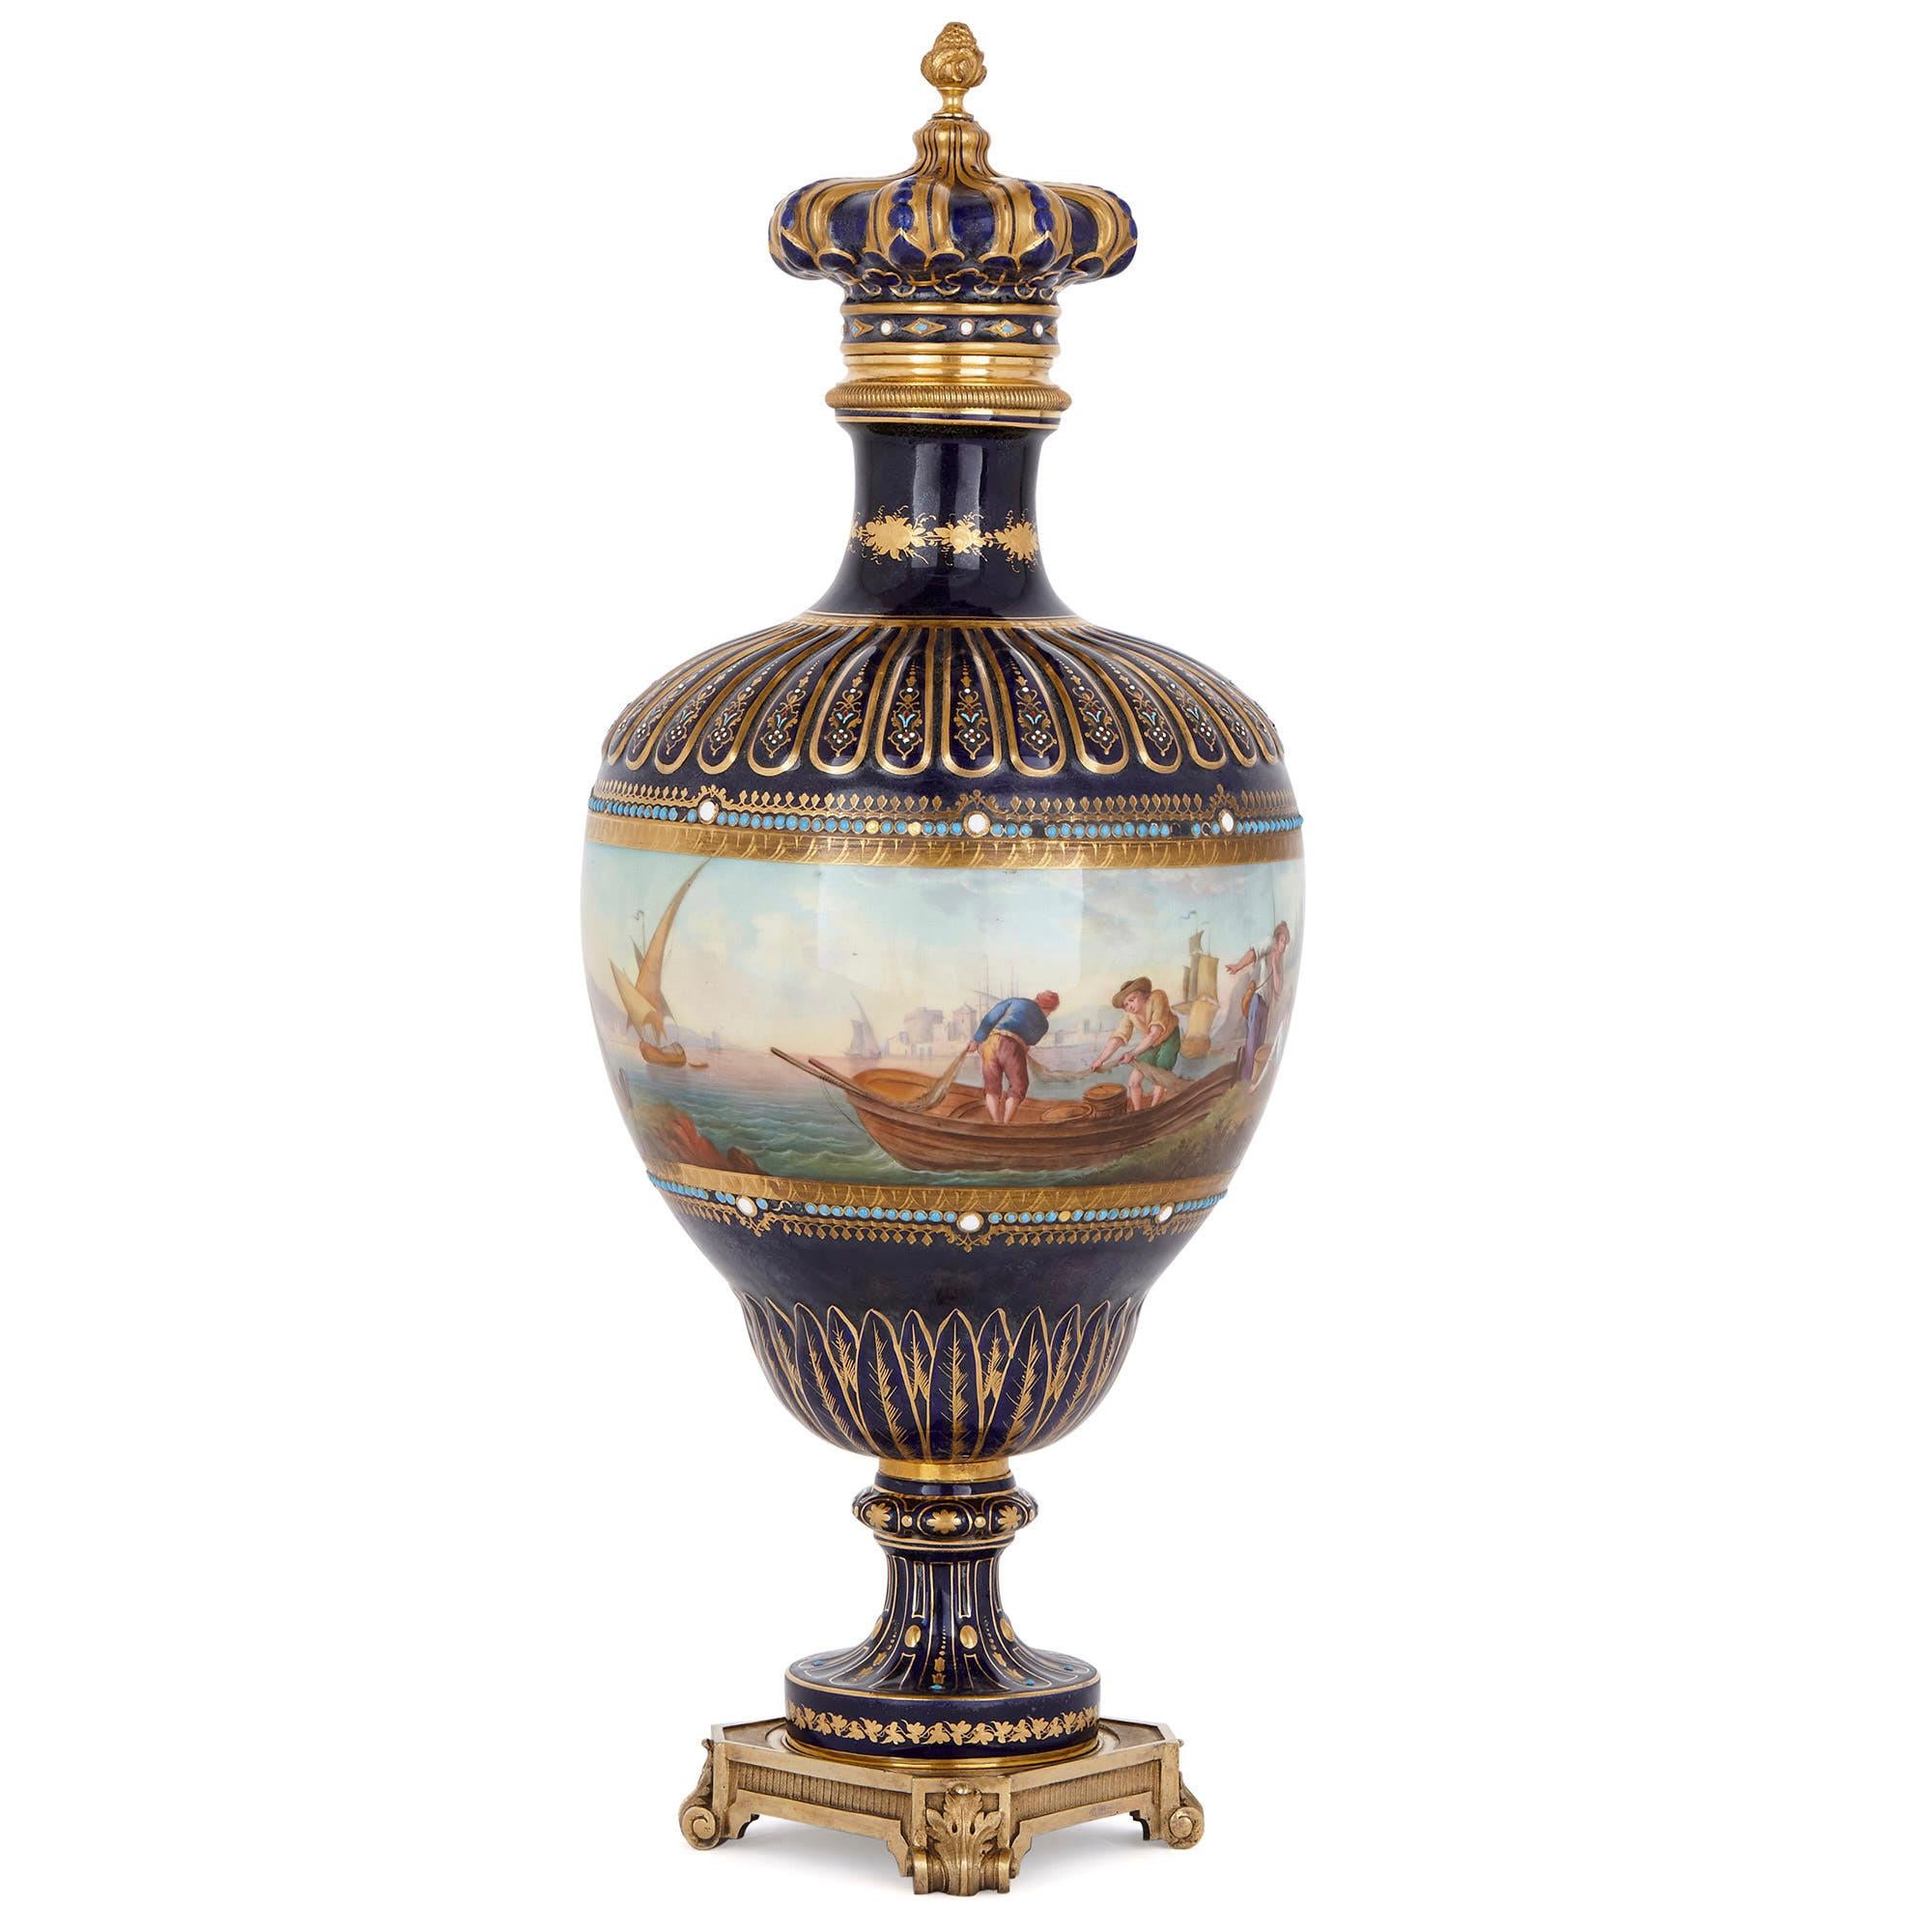 Diese schöne Vase wurde in Frankreich in der Zeit geschaffen, als Napoleon III. Kaiser war (1852-1870). Es ist im Stil des Porzellans der Manufaktur Sèvres gestaltet. Die Waren aus Sèvres sind oft wunderschön von Hand bemalt, mit pastoralen und